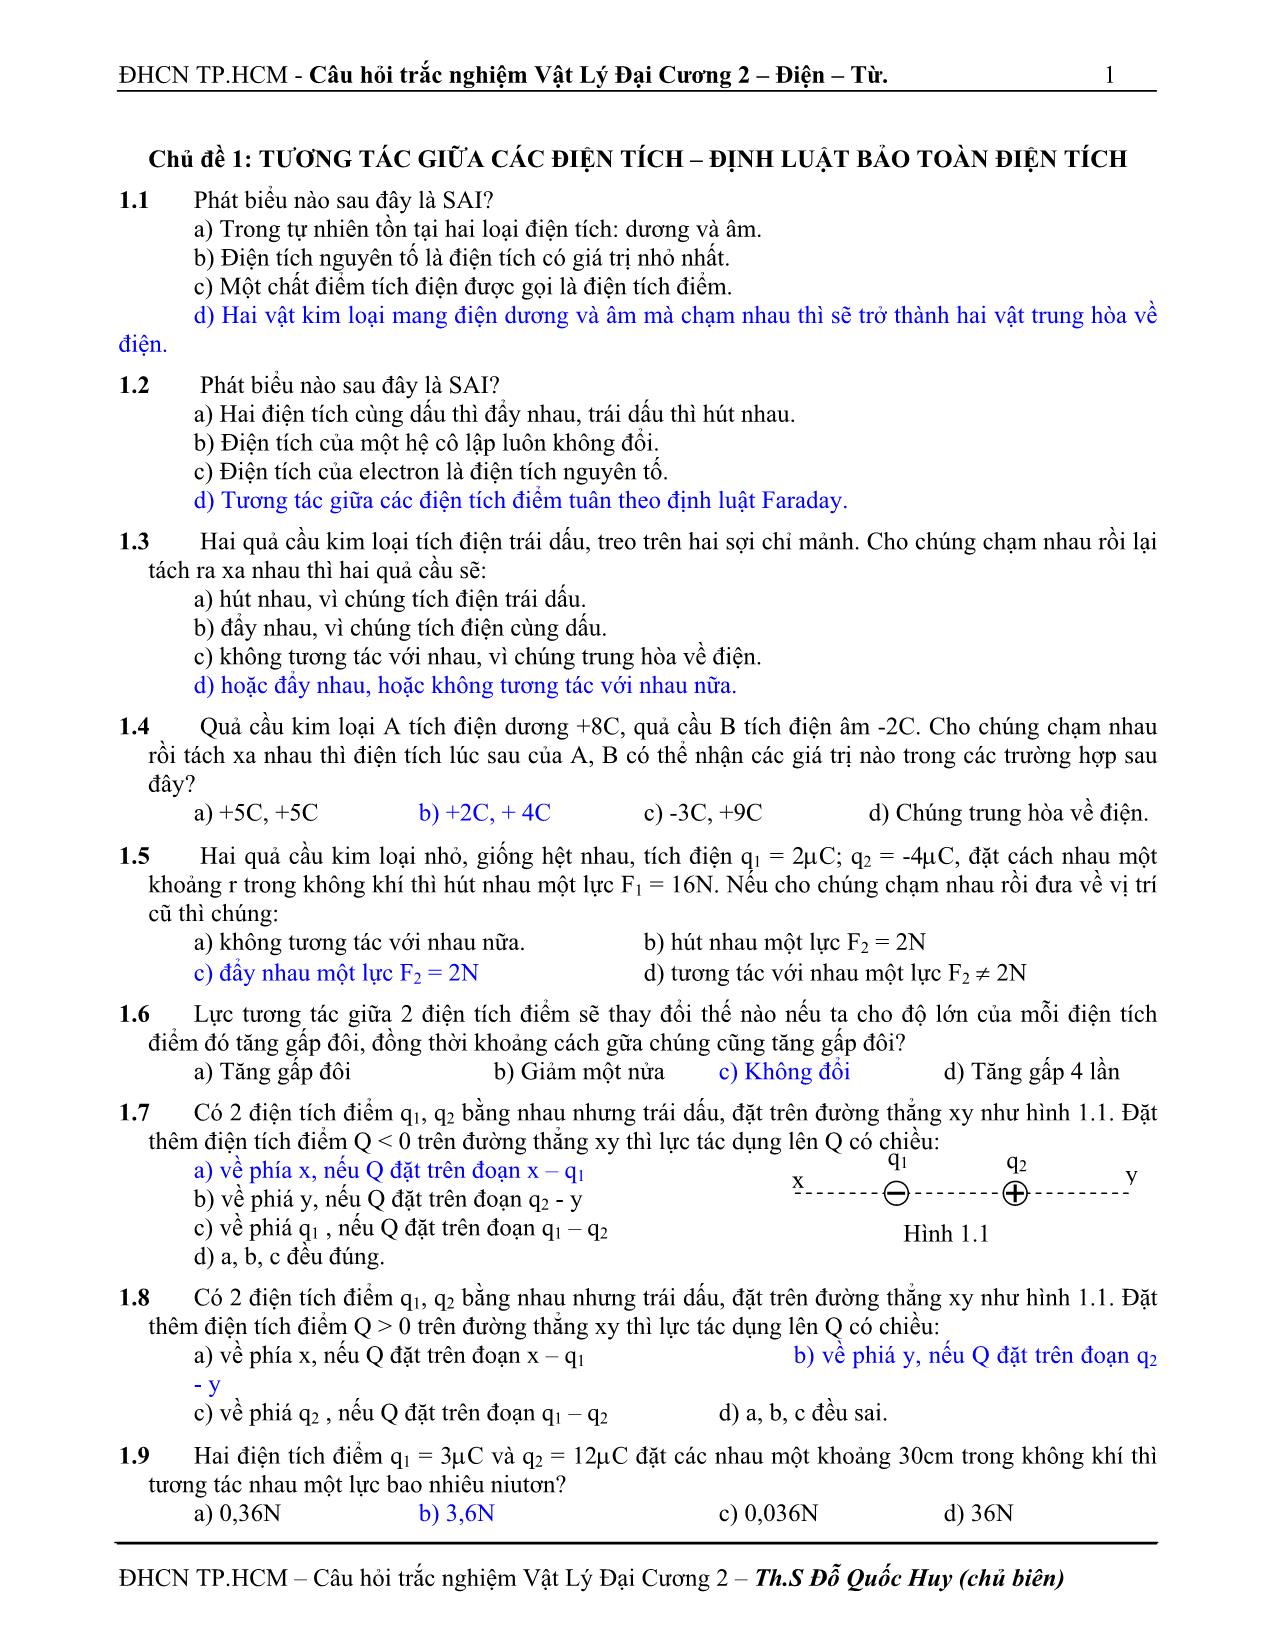 Câu hỏi trắc nghiệm vật lý đại cương 2 trang 1